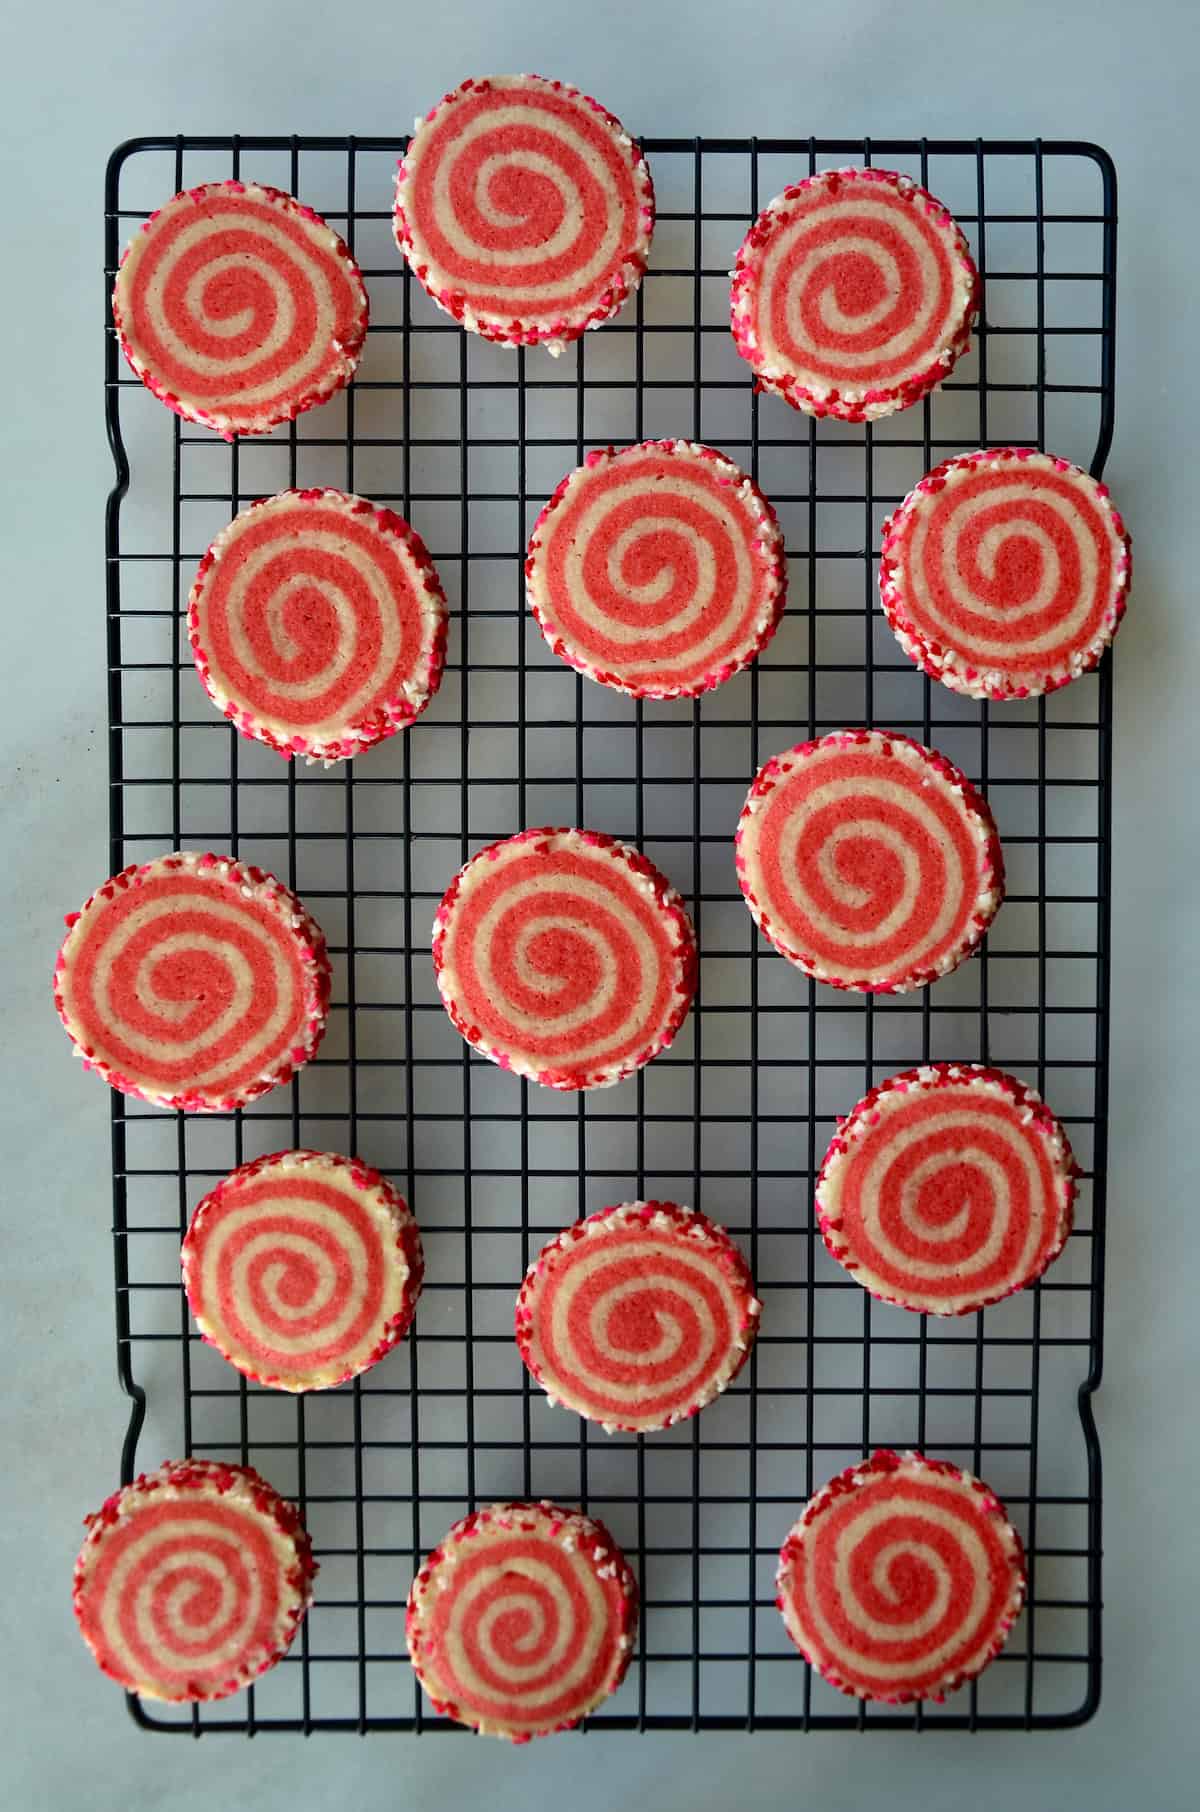 Pink pinwheel sugar cookies, edged in sprinkles, are arranged on a baking rack.